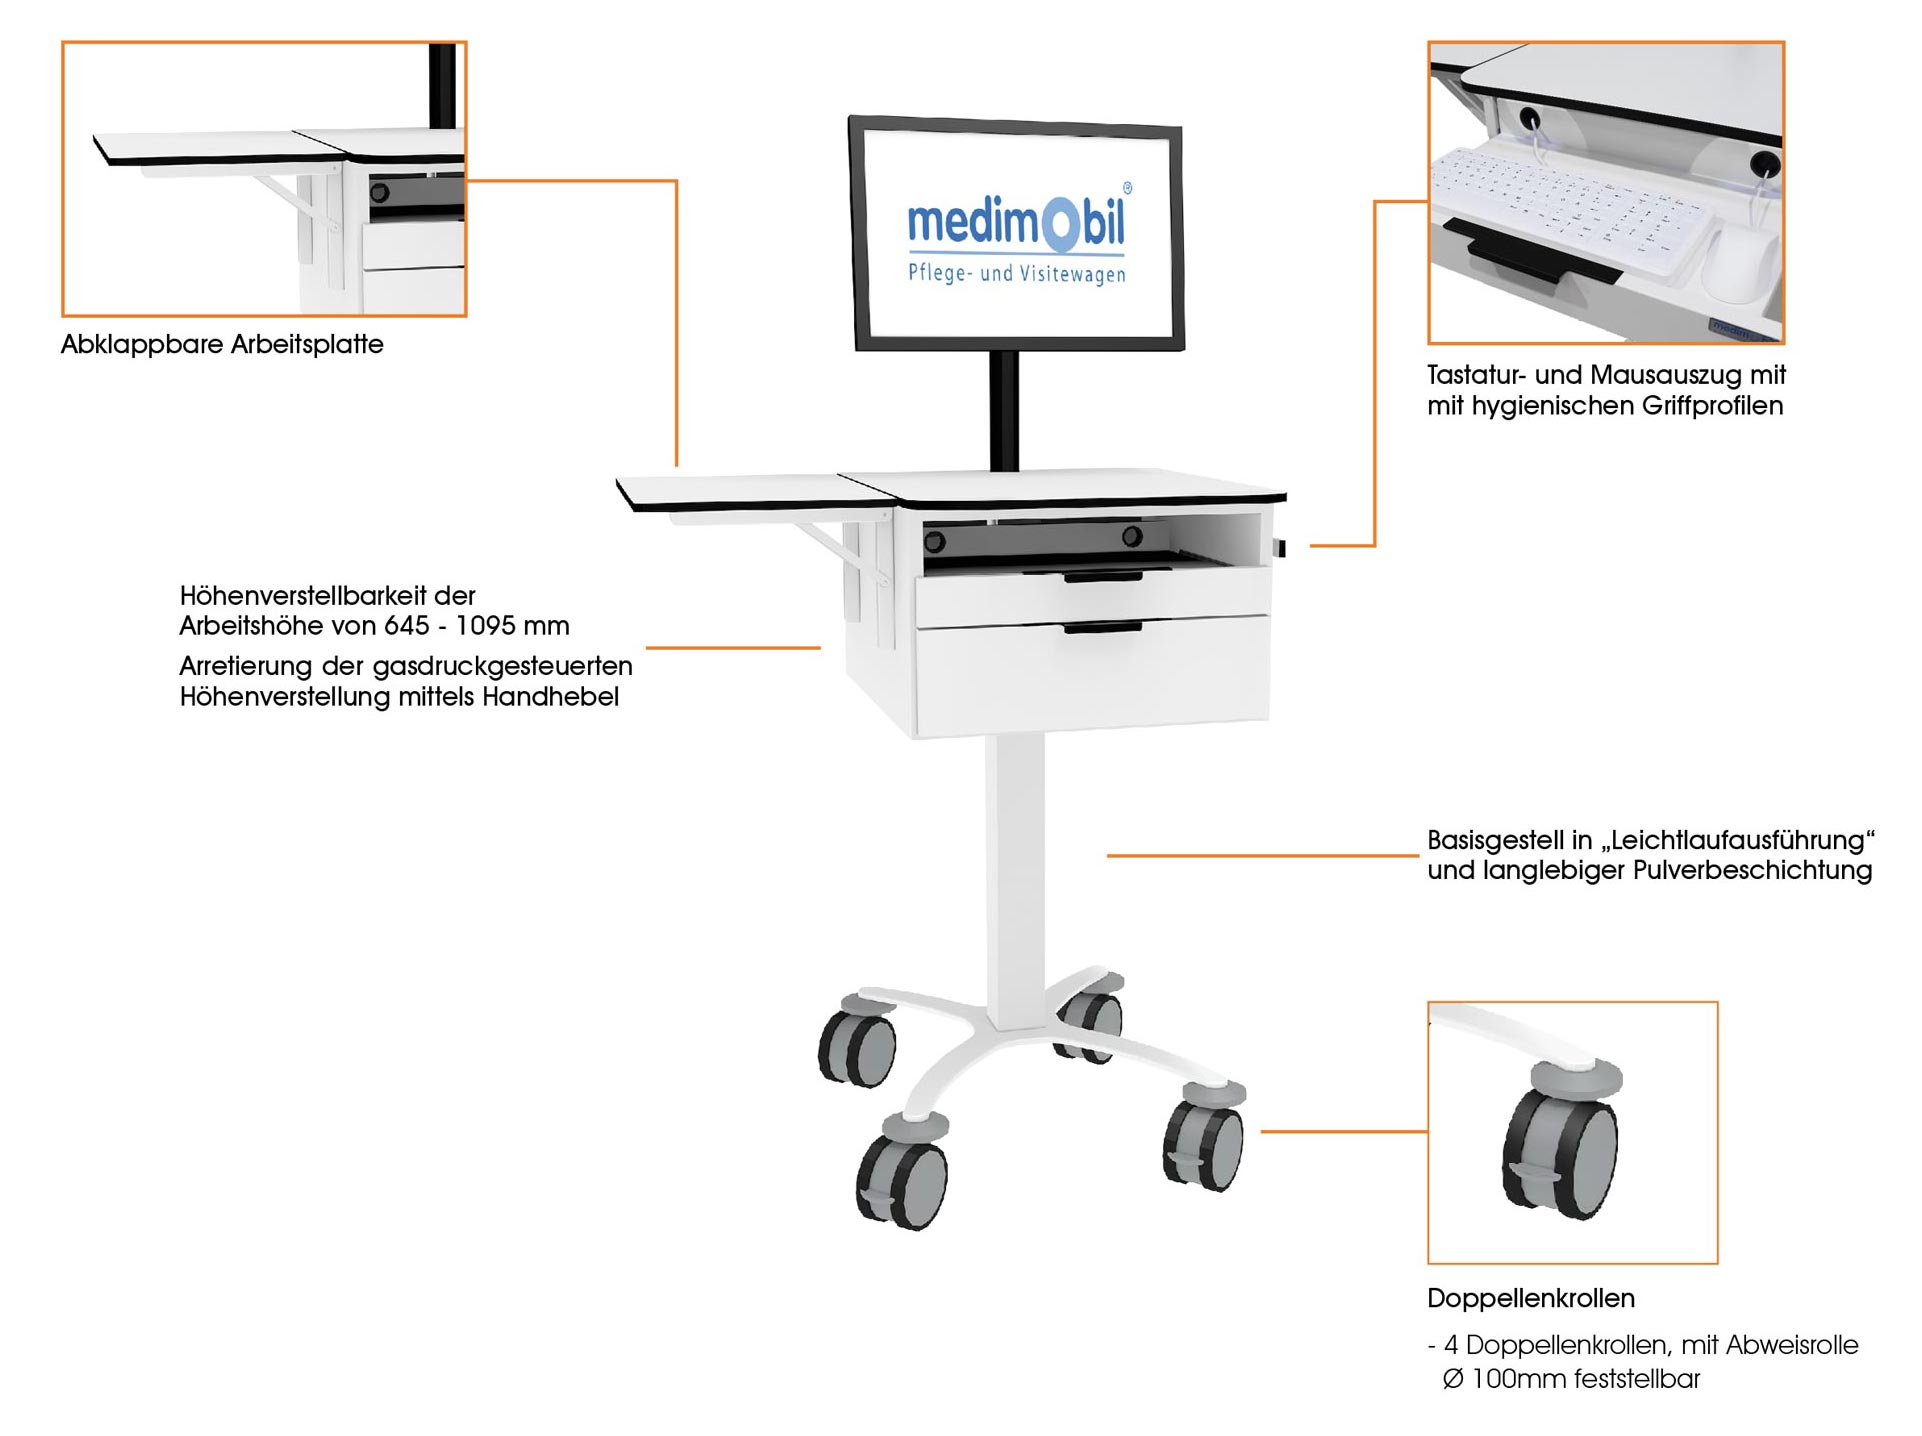 Compact-Line EDV Pflegewagen mit Monitor medimobil Aufbau und Beschreibung